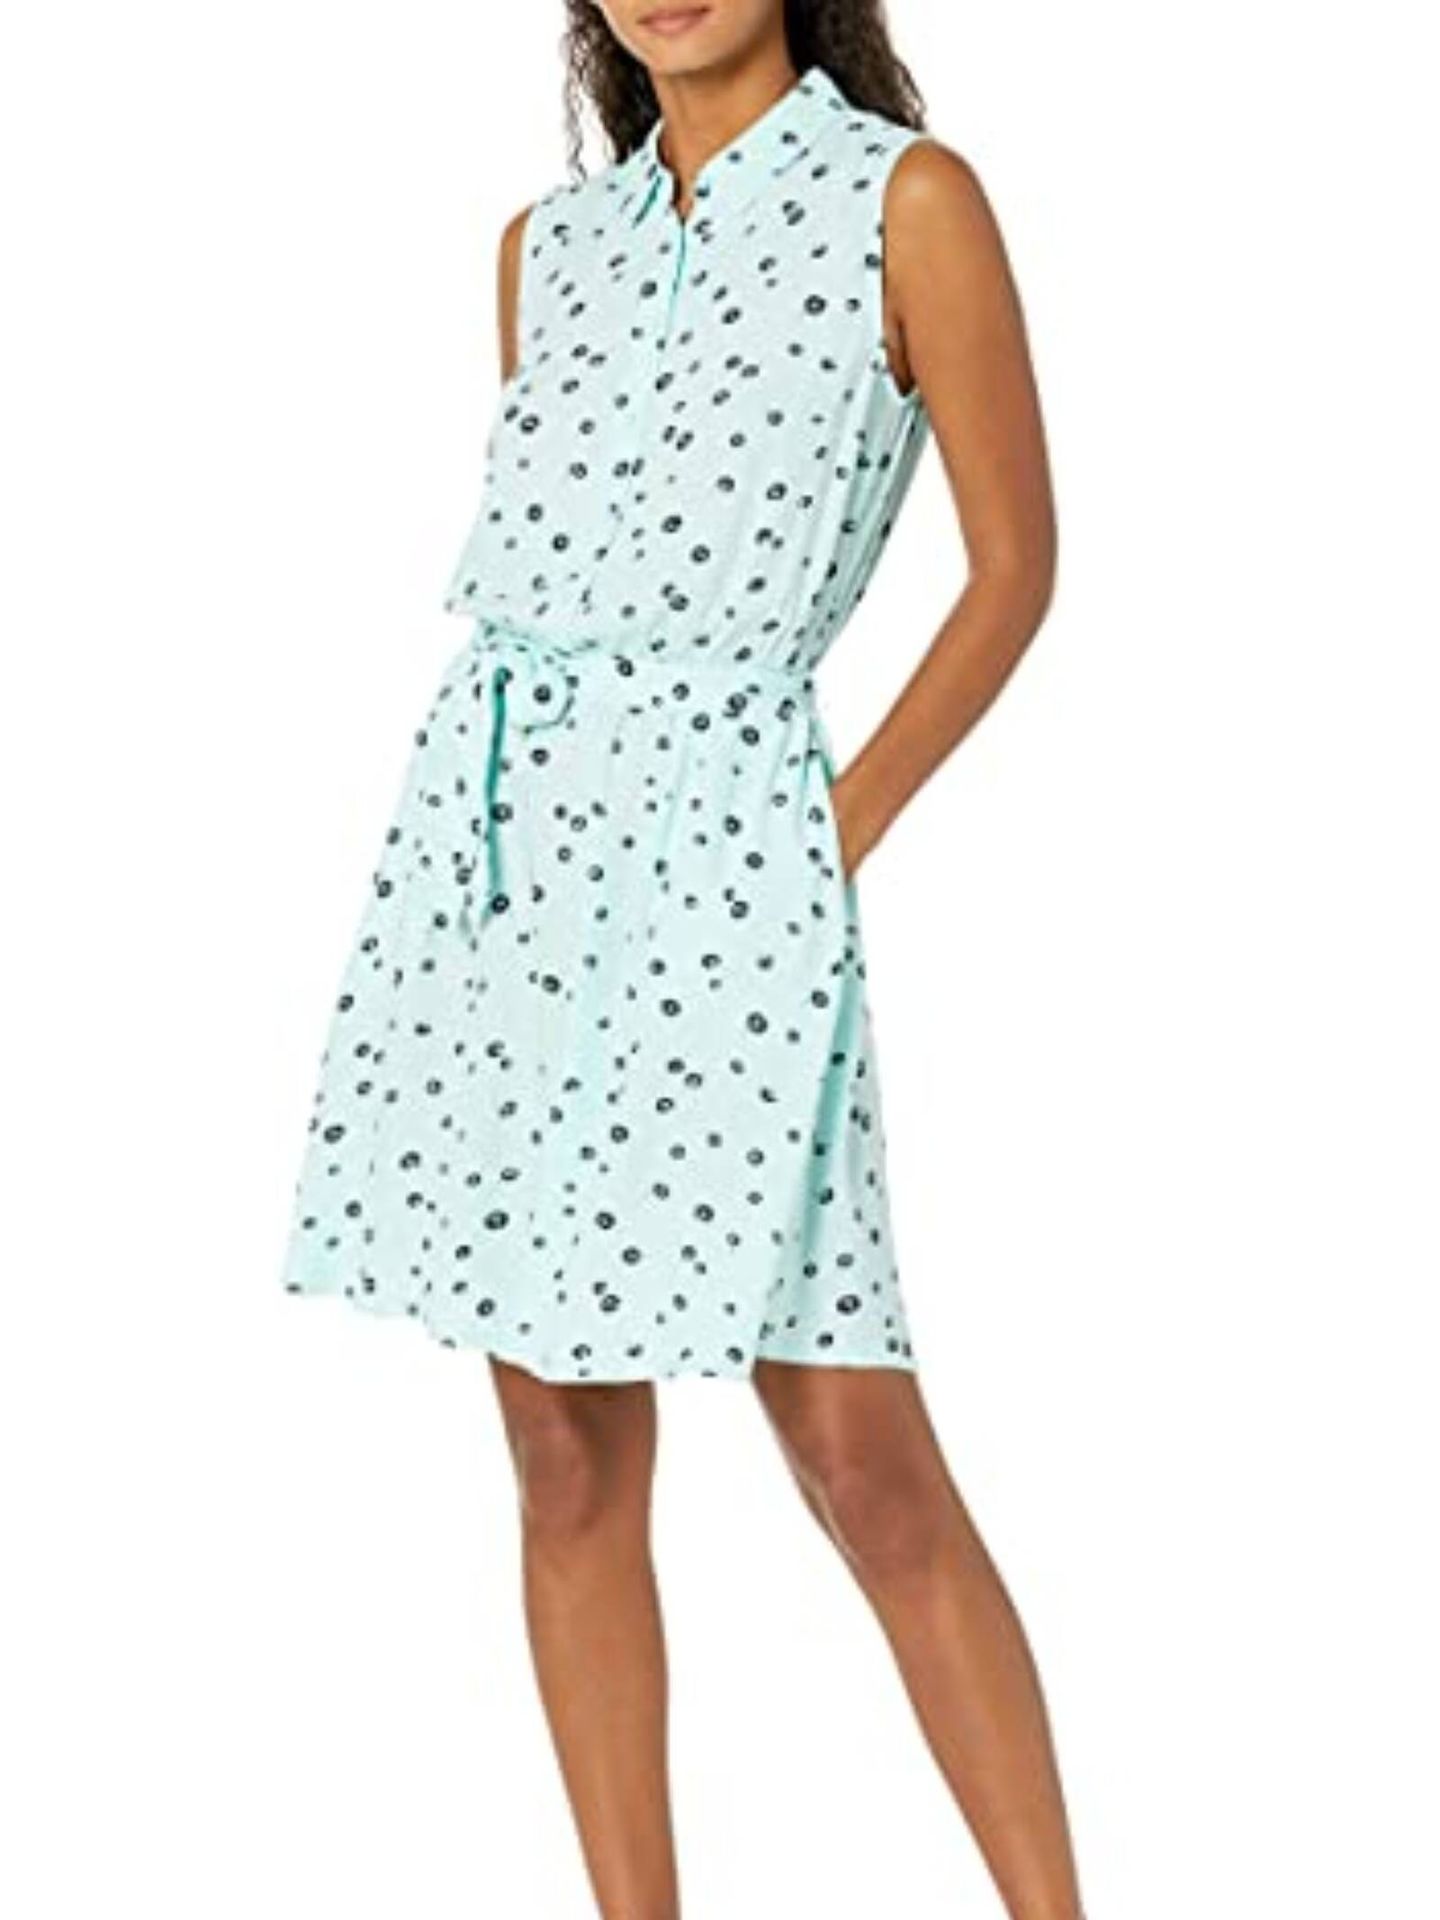 10 nuevos vestidos low cost para primavera. (Amazon/Cortesía)